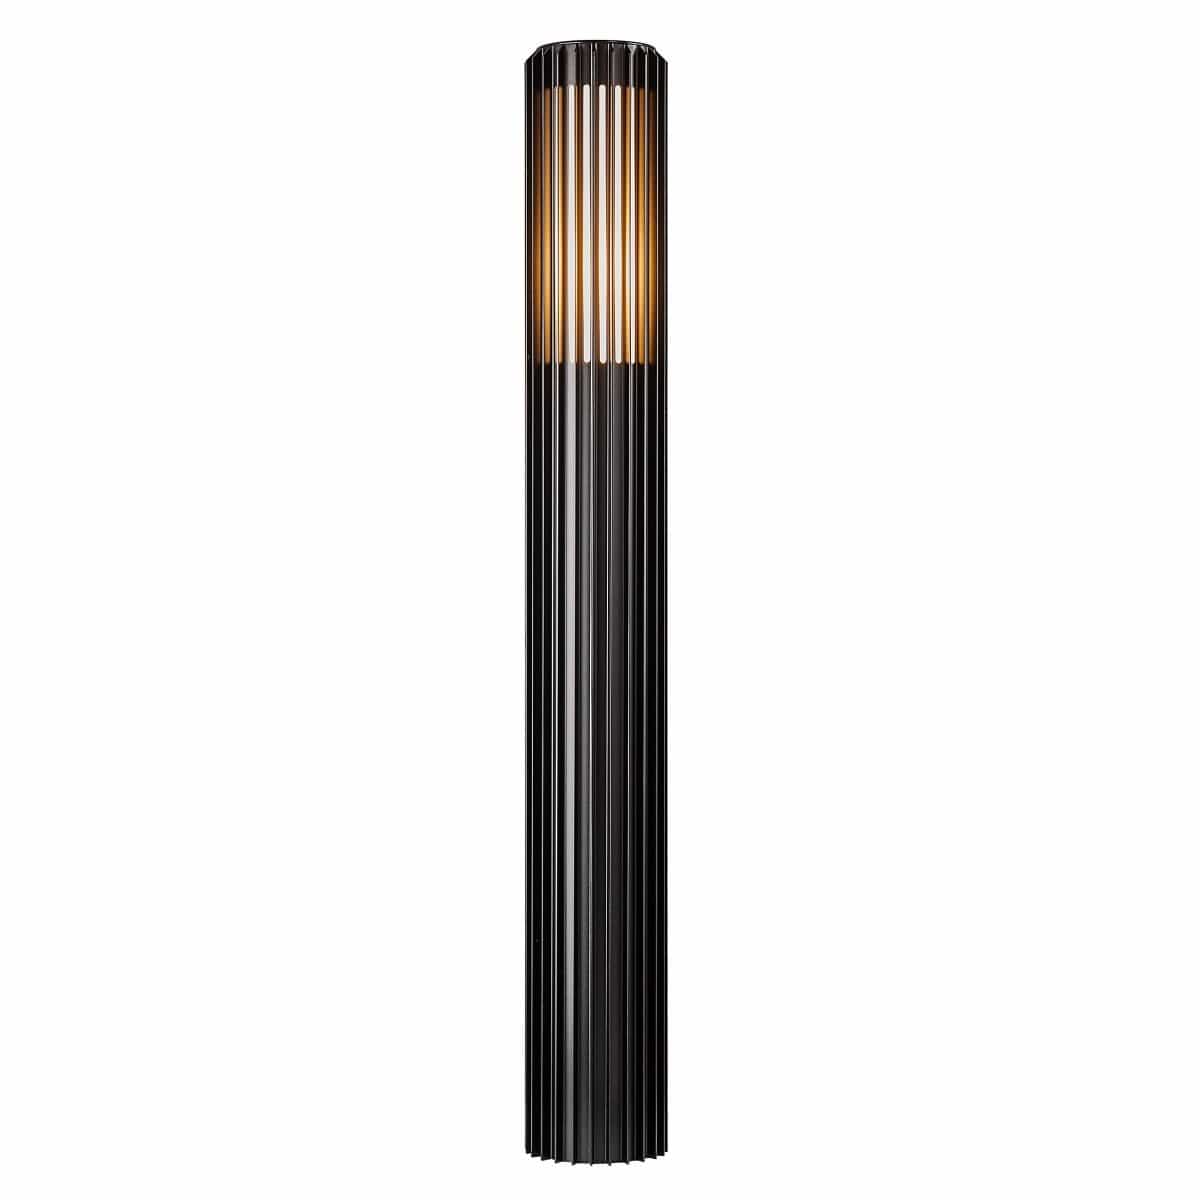 Nordlux Outdoor Lights Black Aludra 95 Tall Outdoor Garden Light, aluminium, black, or brown